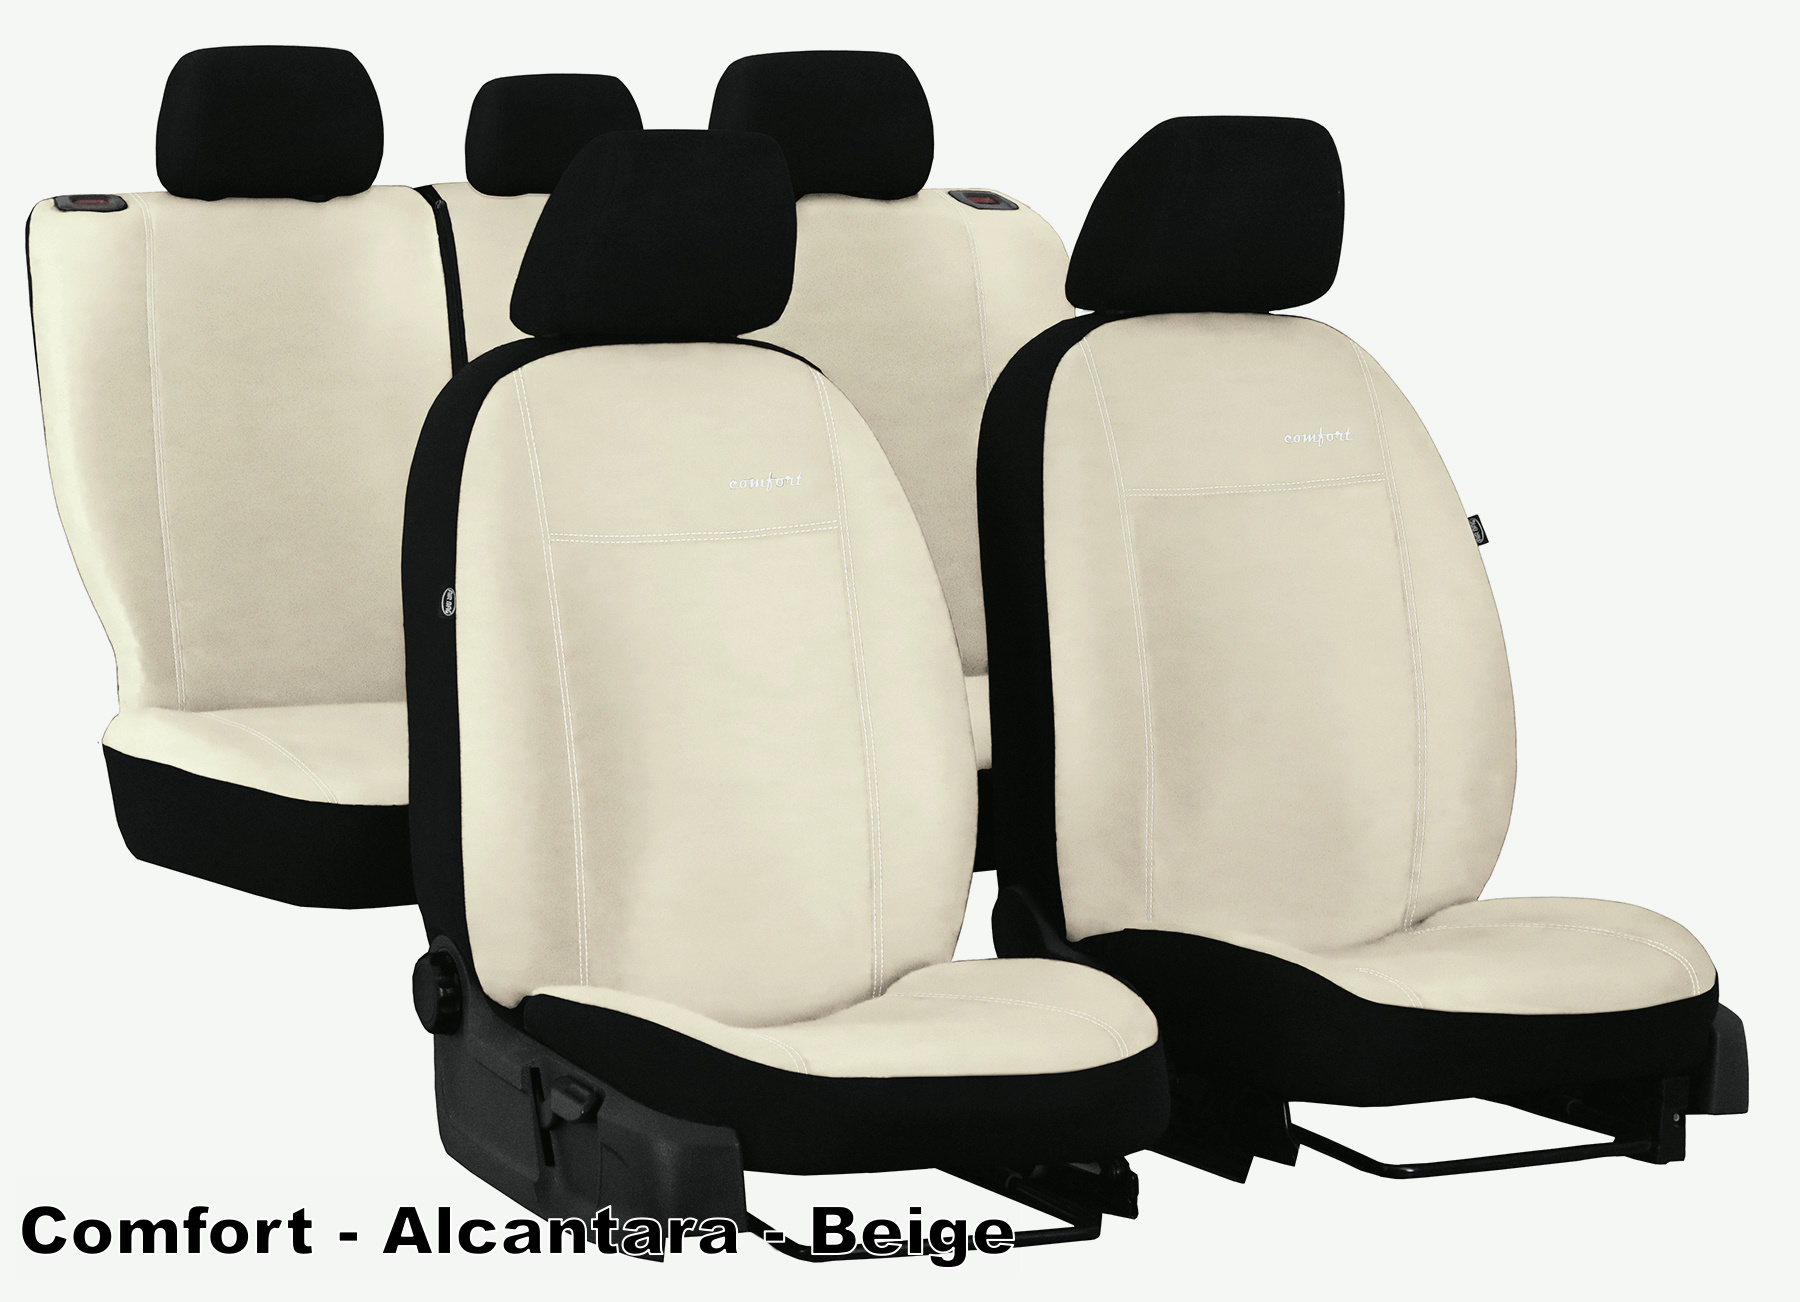 Passend für Seat Alhambra II 7 Sitze 2010-2023 Maß Sitzbezüge Kunstleder  schwarz